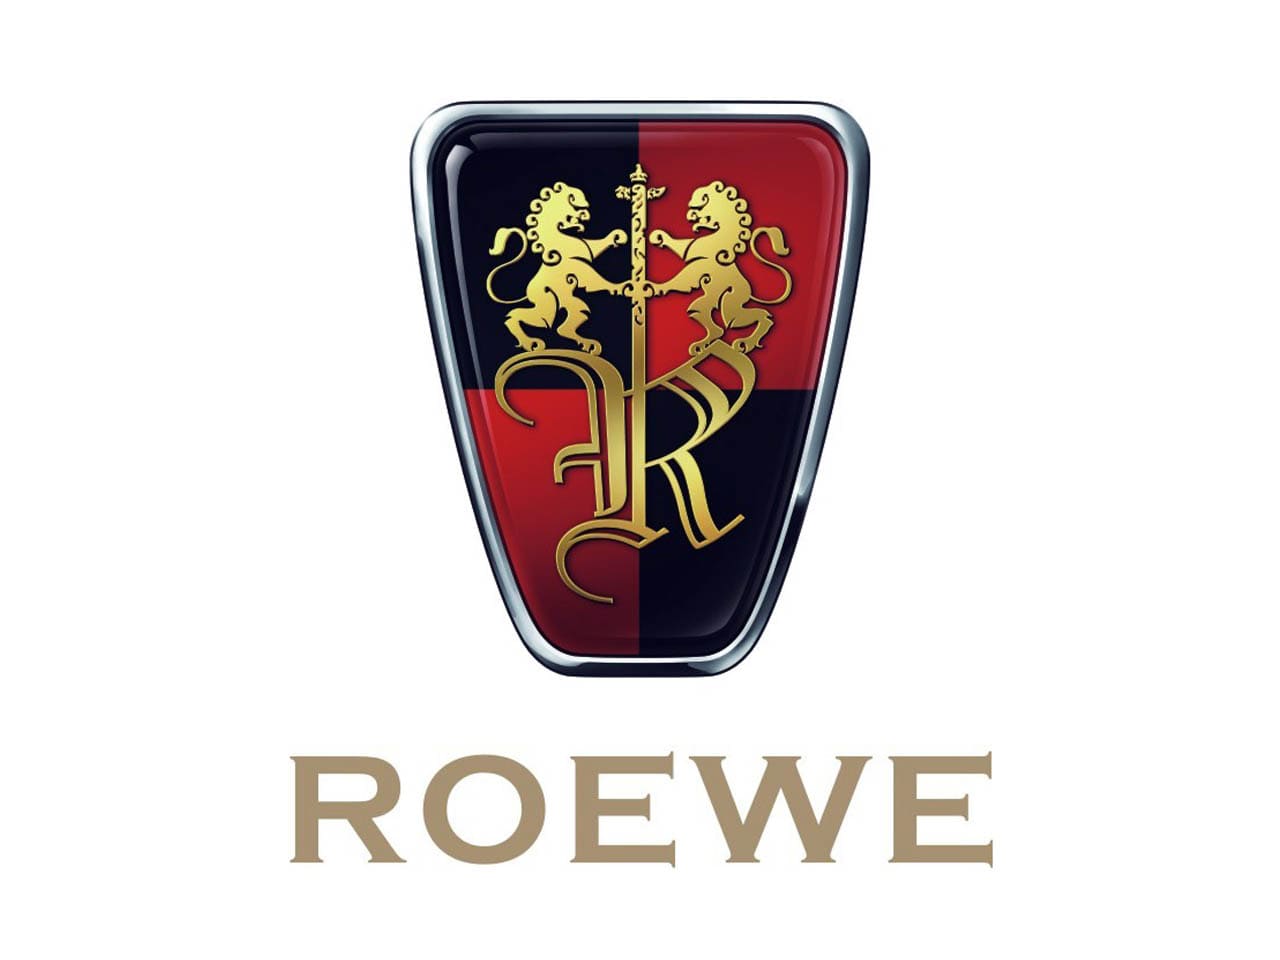 Китайская автофирма 6 букв. Roewe логотип. Автомобиль Roewe. Китайские автомобили Roewe. Логотипы JAC на запасных частях.